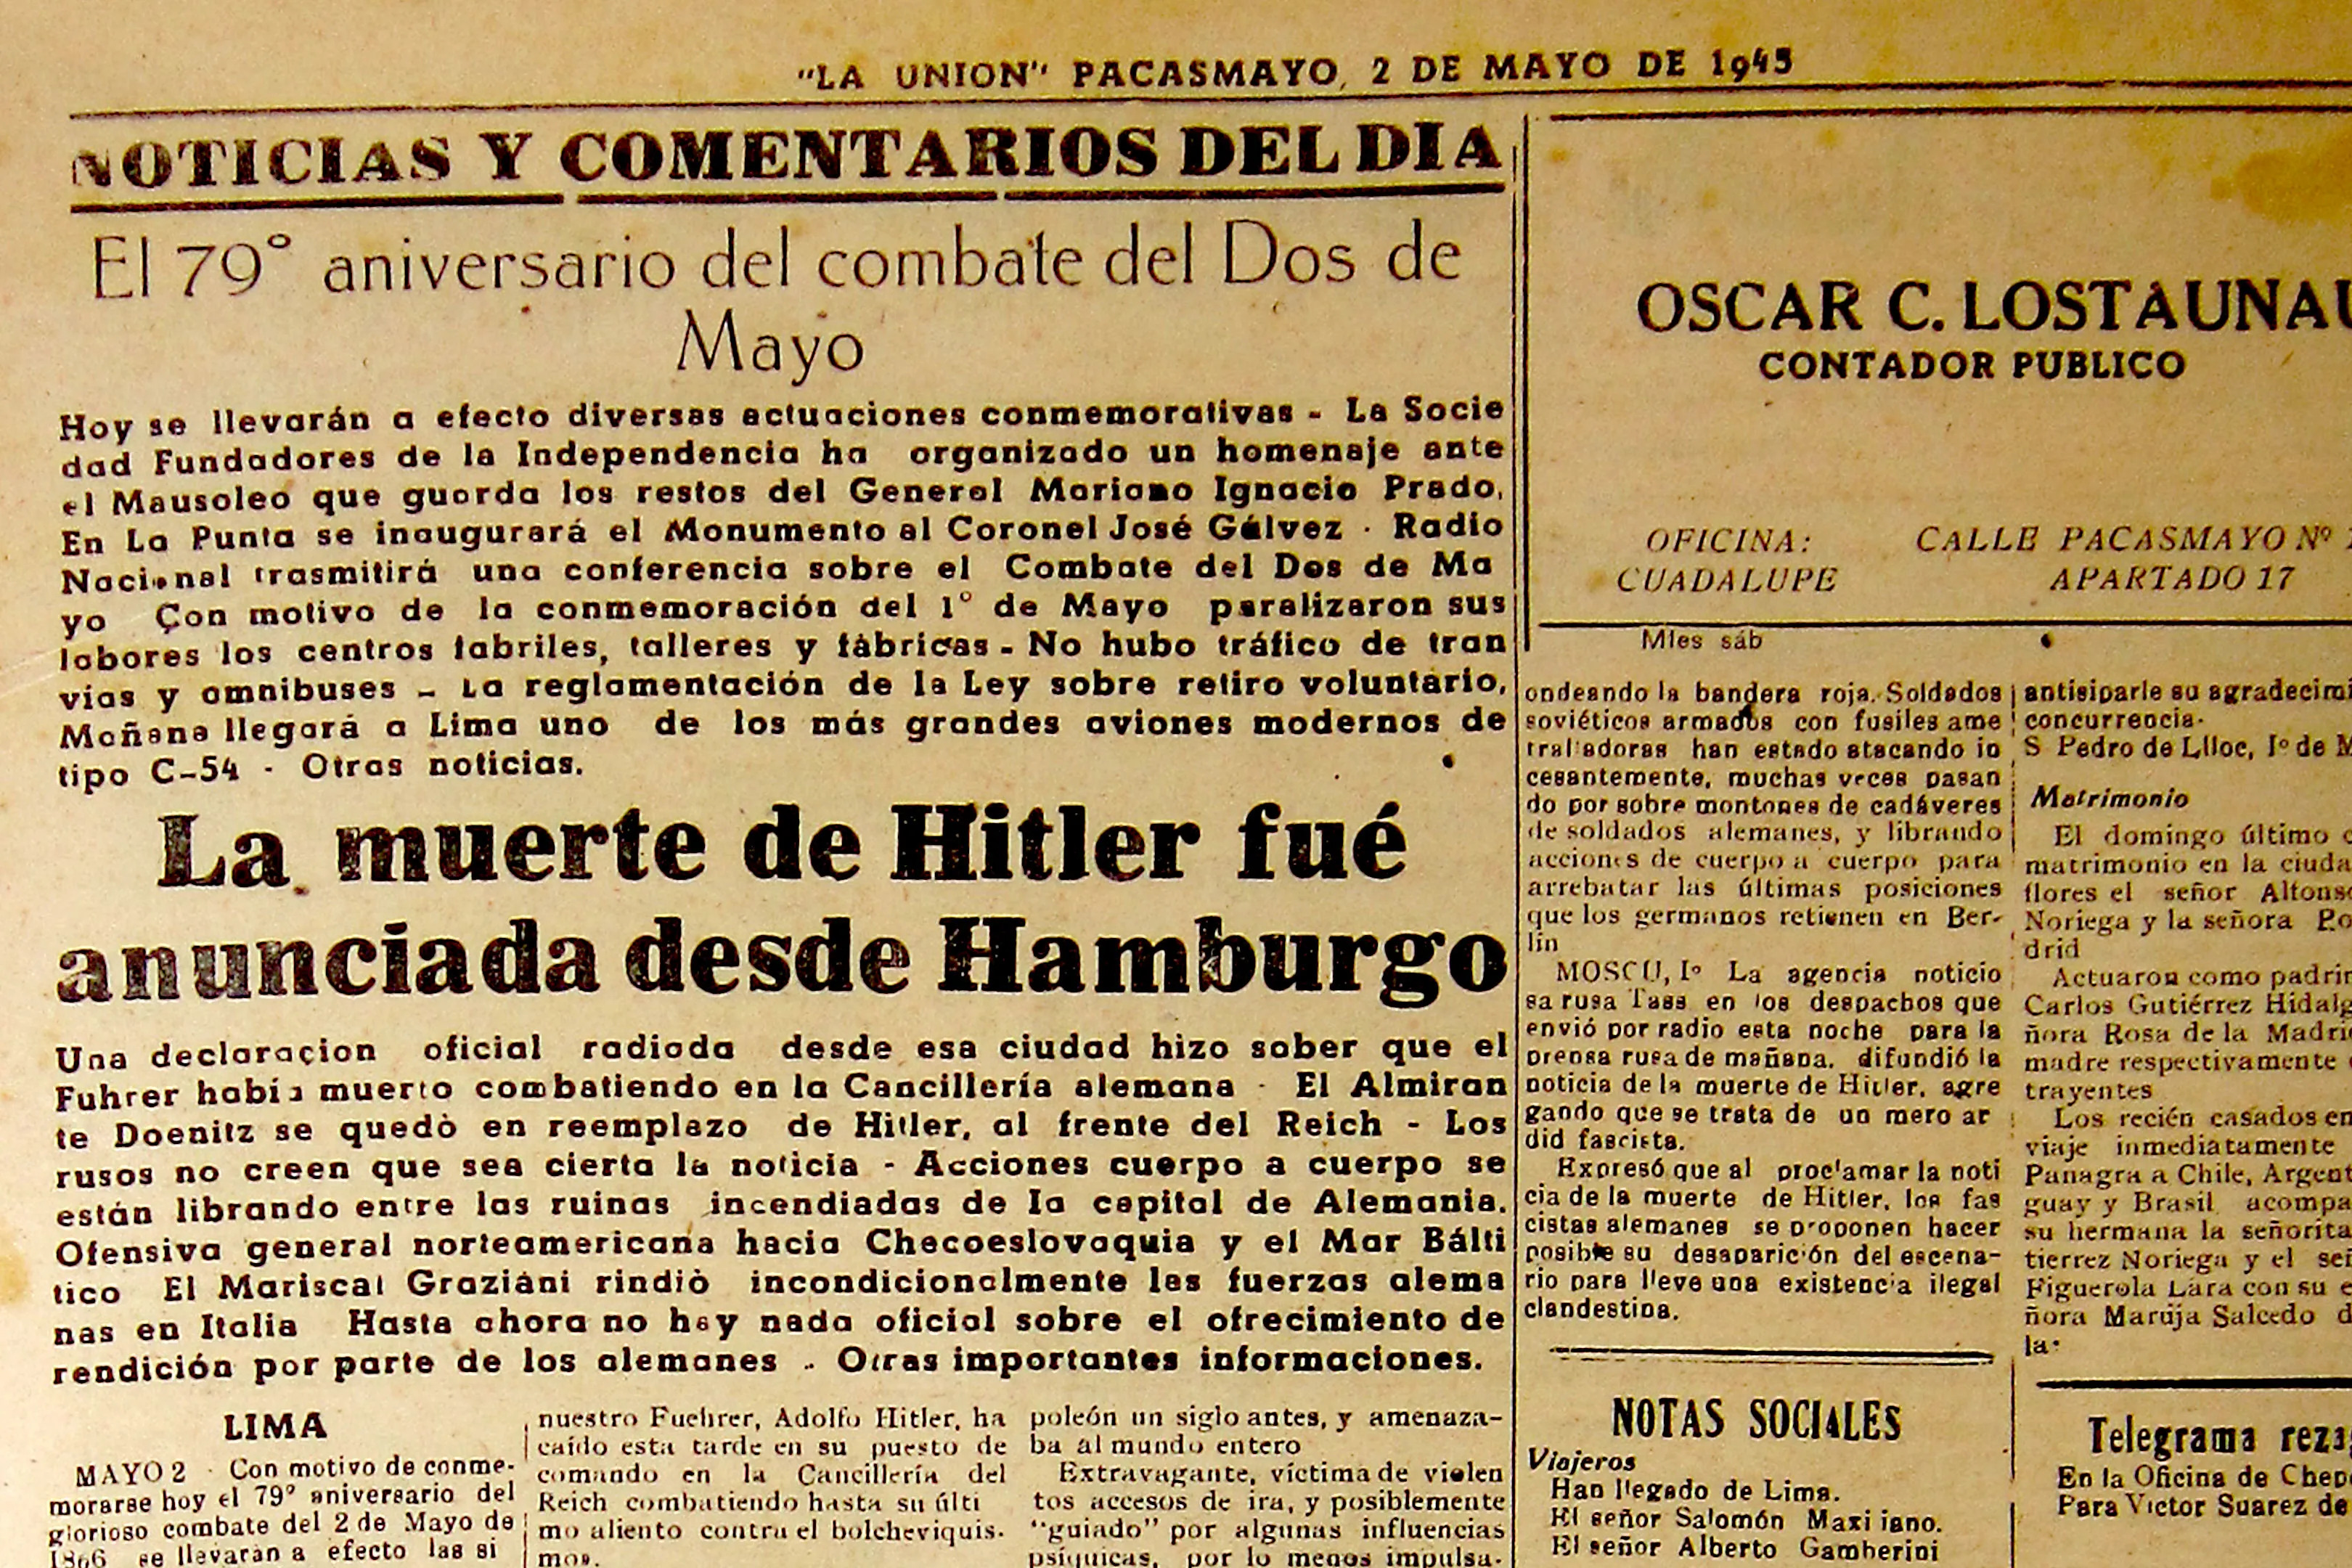 Hitler's Death published in La Unión